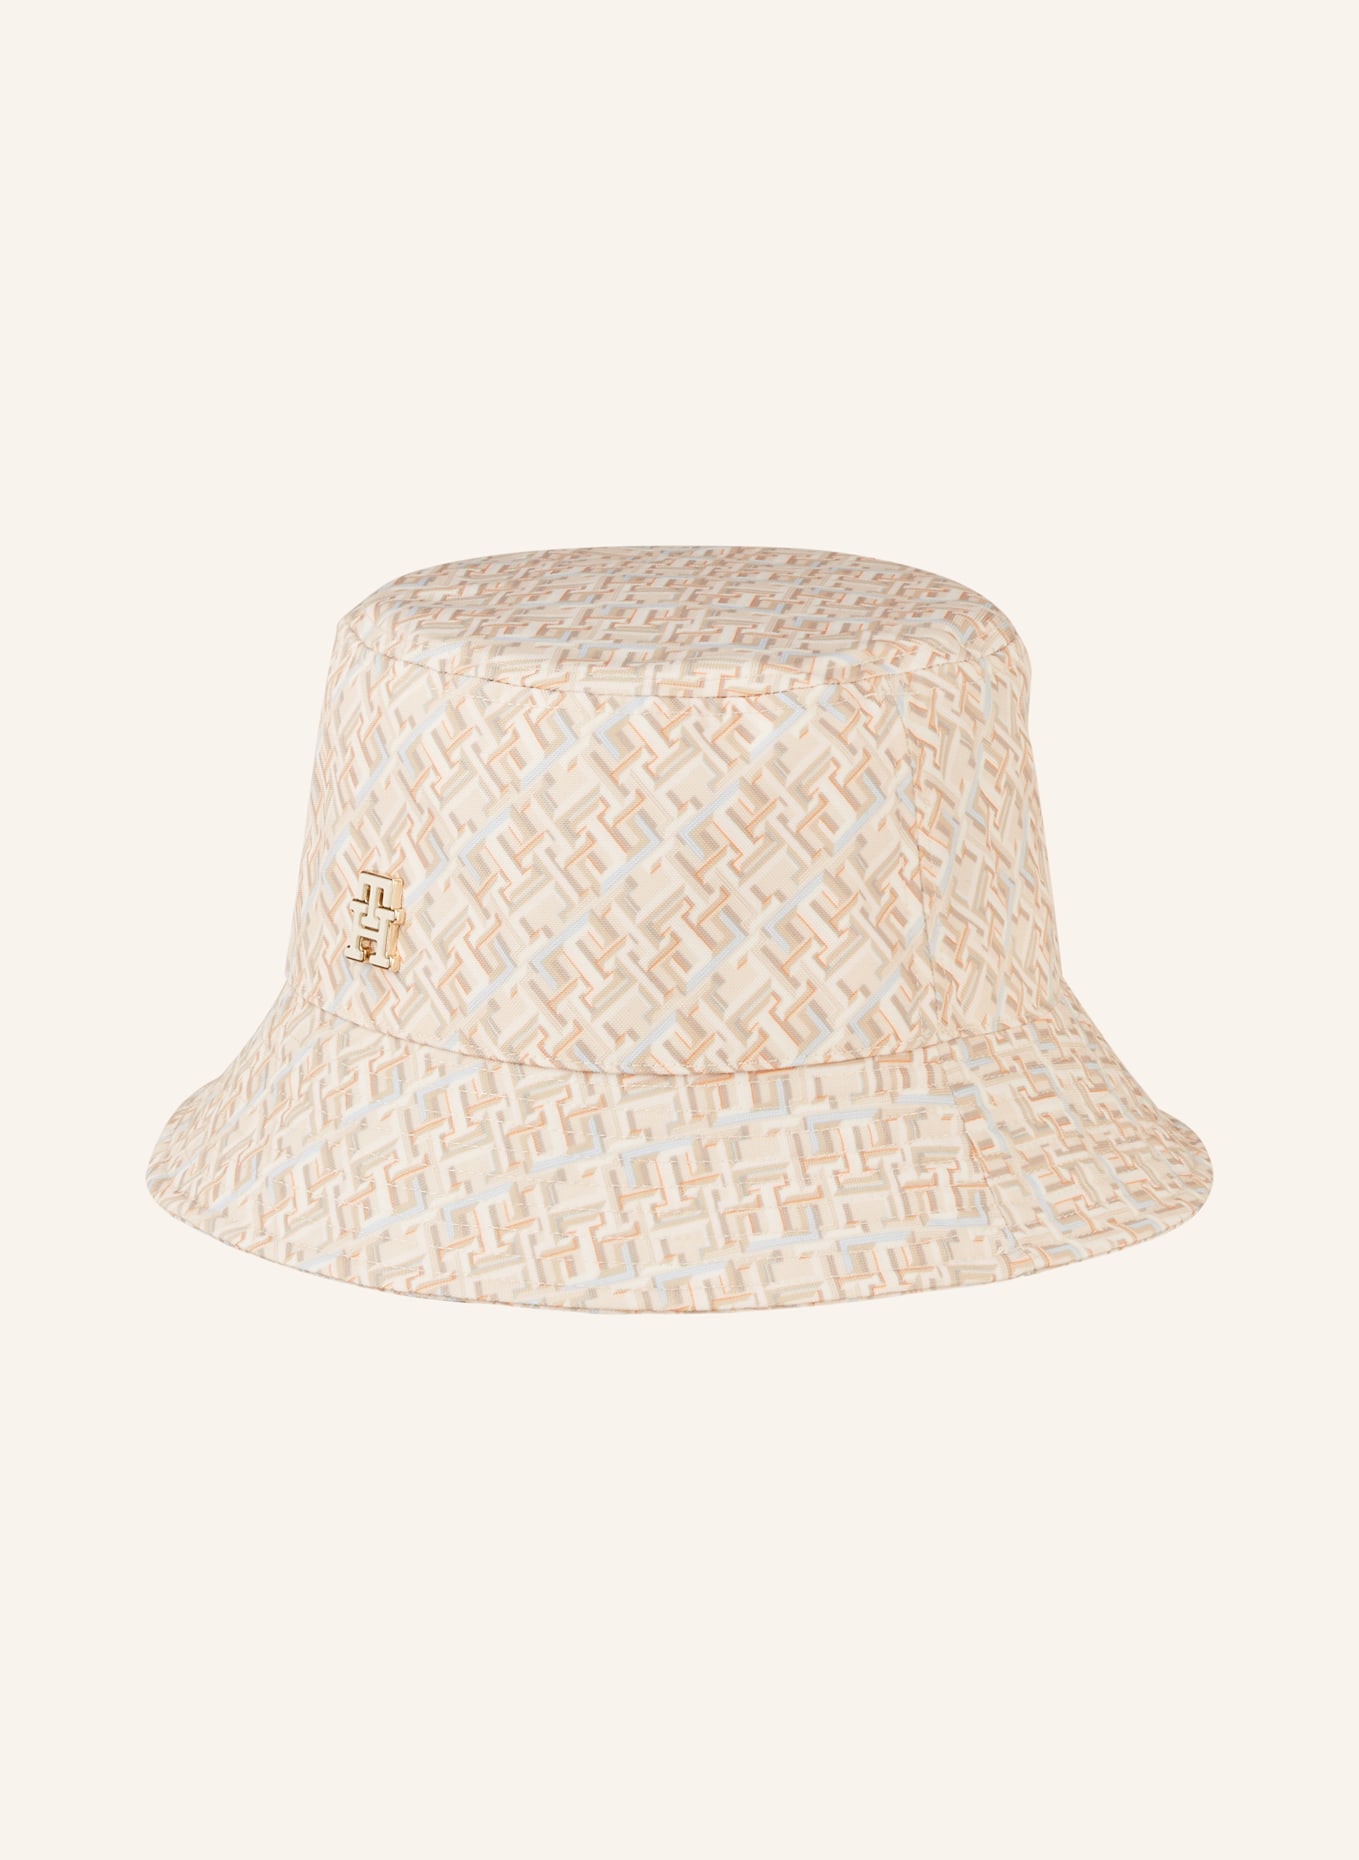 TOMMY HILFIGER Bucket hat, Color: LIGHT BROWN/ LIGHT BLUE/ ORANGE (Image 2)